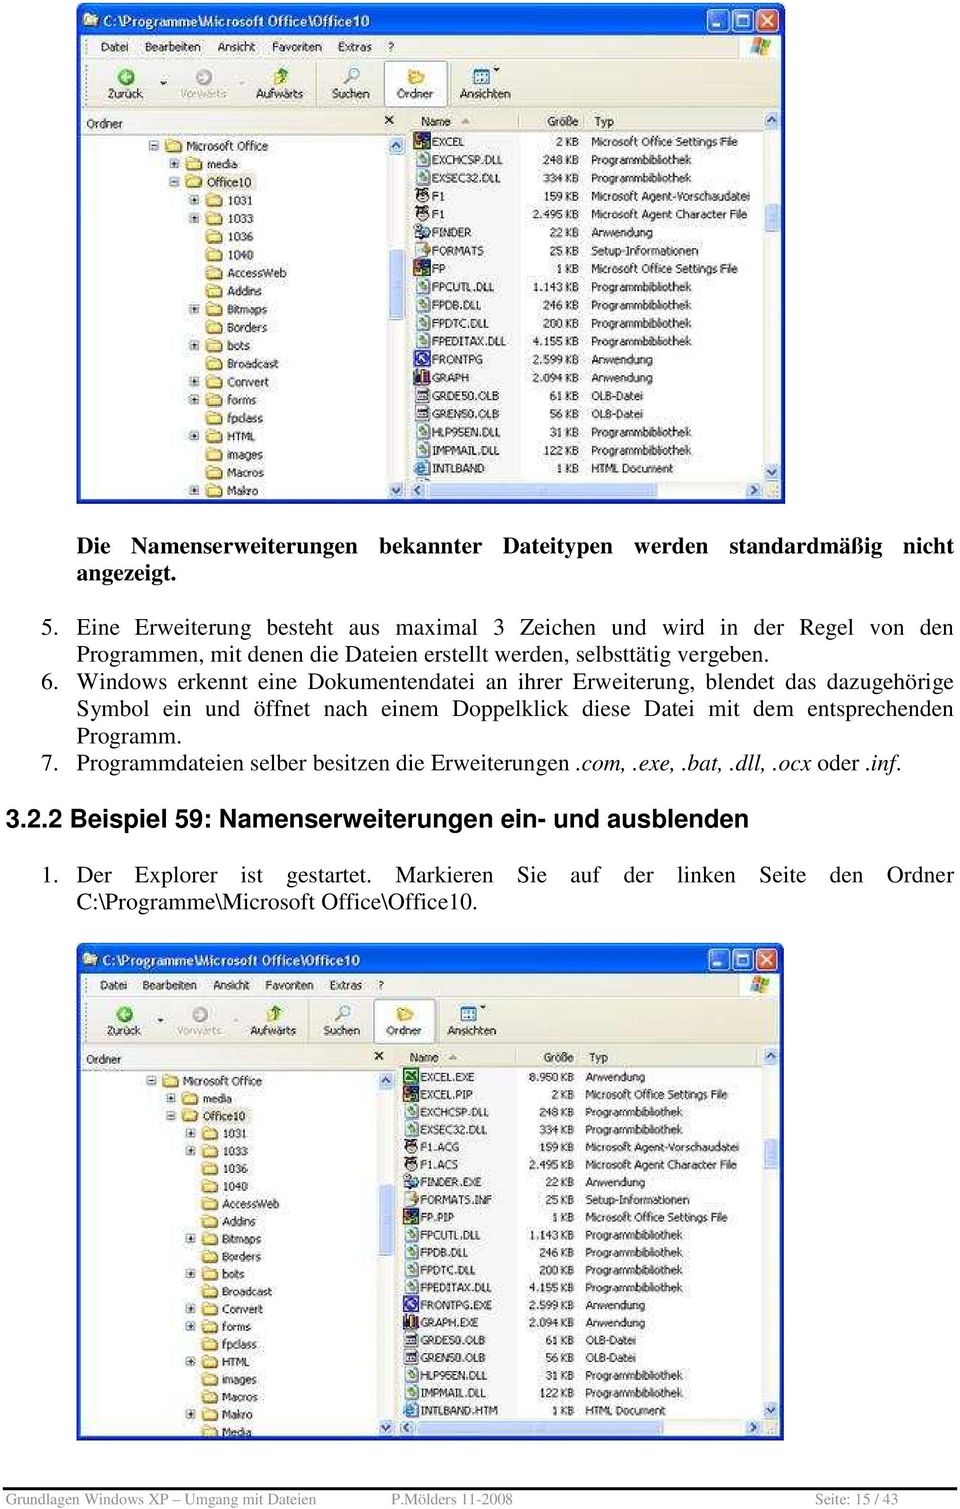 Windows erkennt eine Dokumentendatei an ihrer Erweiterung, blendet das dazugehörige Symbol ein und öffnet nach einem Doppelklick diese Datei mit dem entsprechenden Programm. 7.